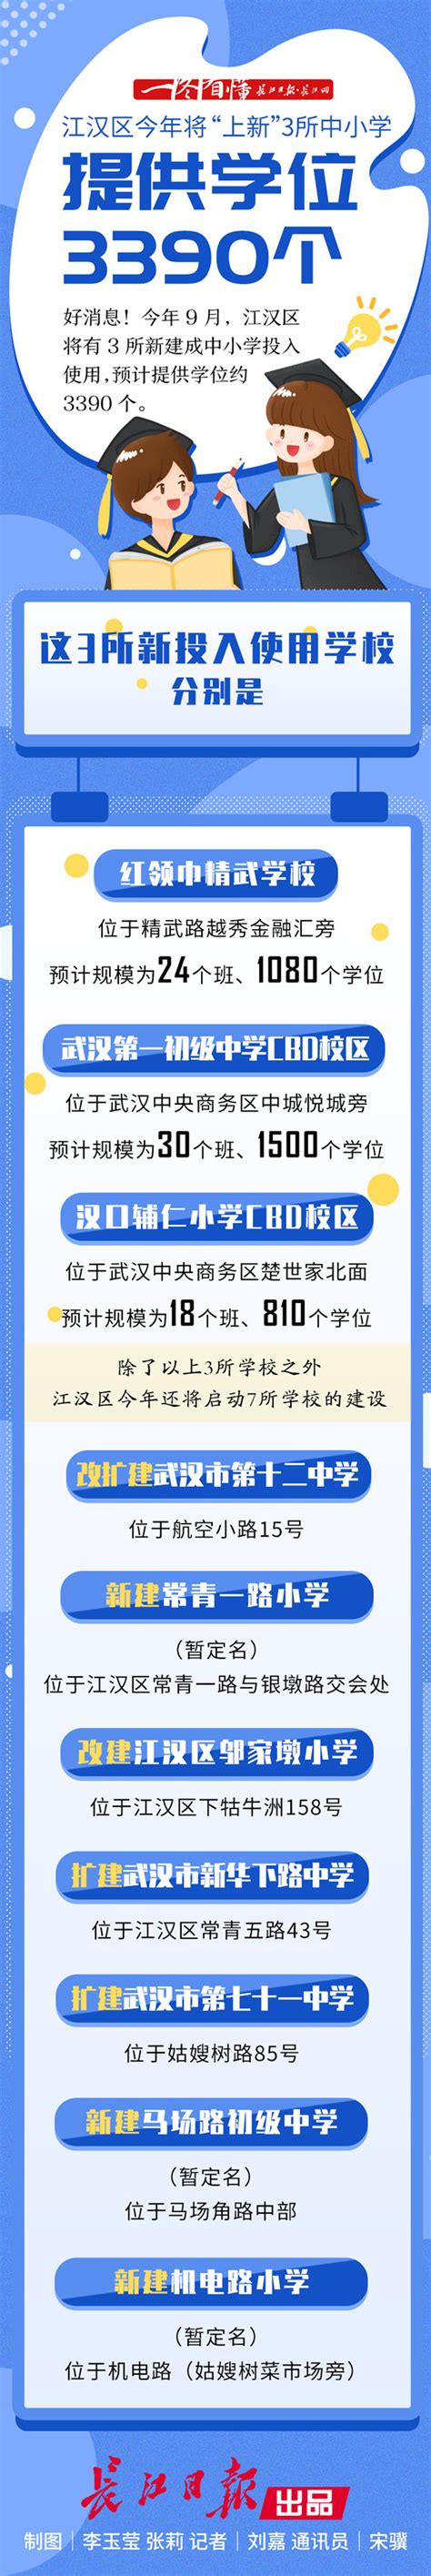 江汉区今年将“上新”3所中小学，提供学位3390个 | 一图看懂|_武汉_新闻中心_长江网_cjn.cn